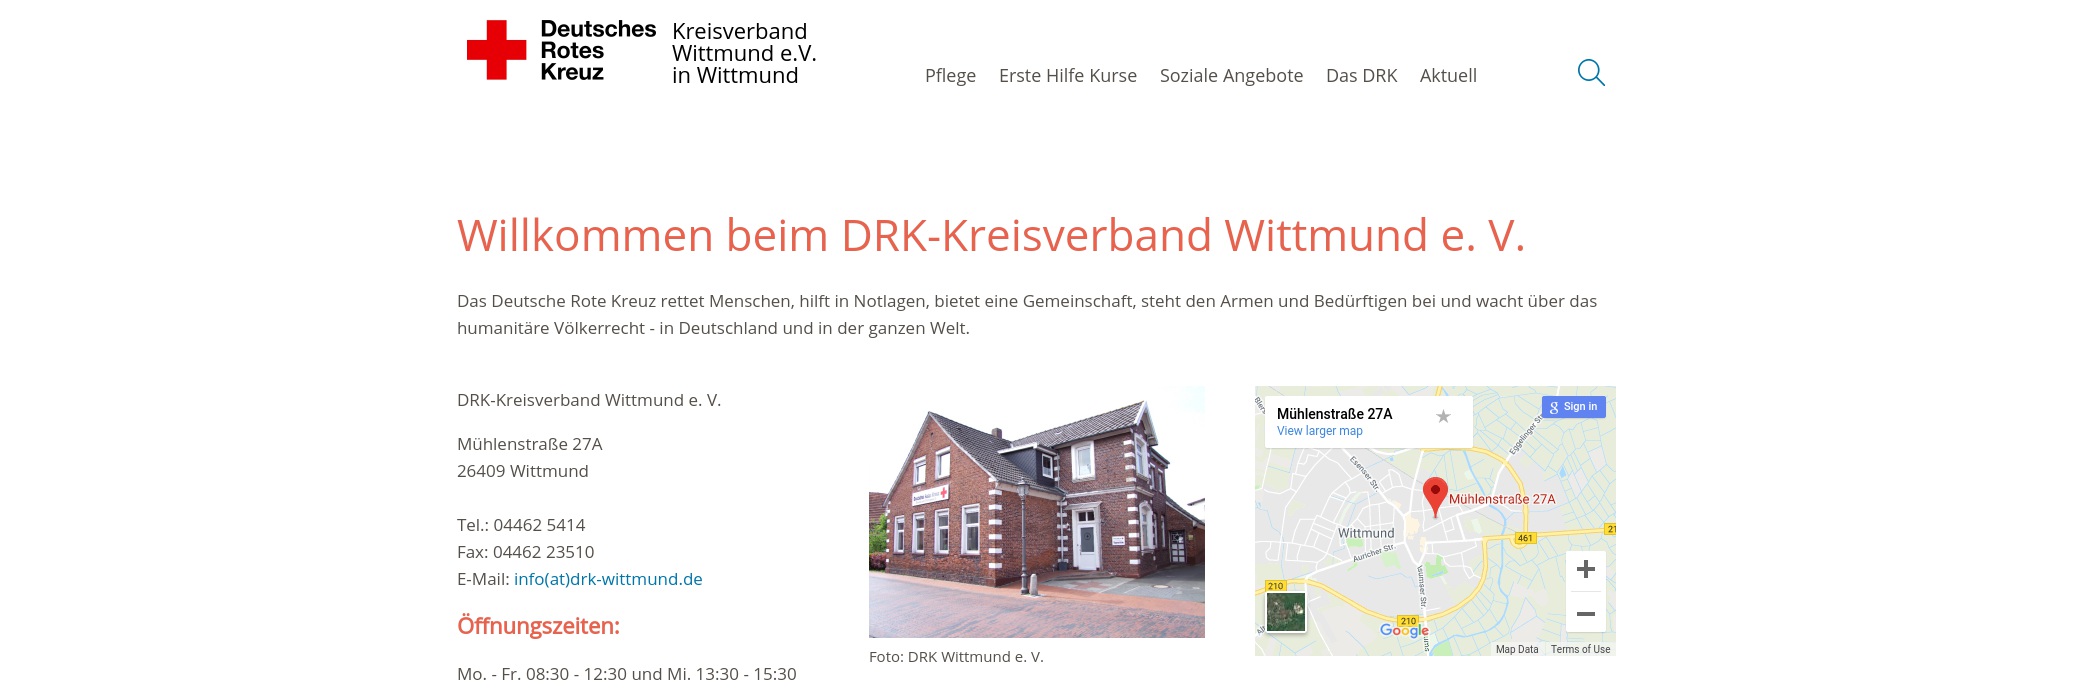 DRK Kreisverband Wittmund e.V.